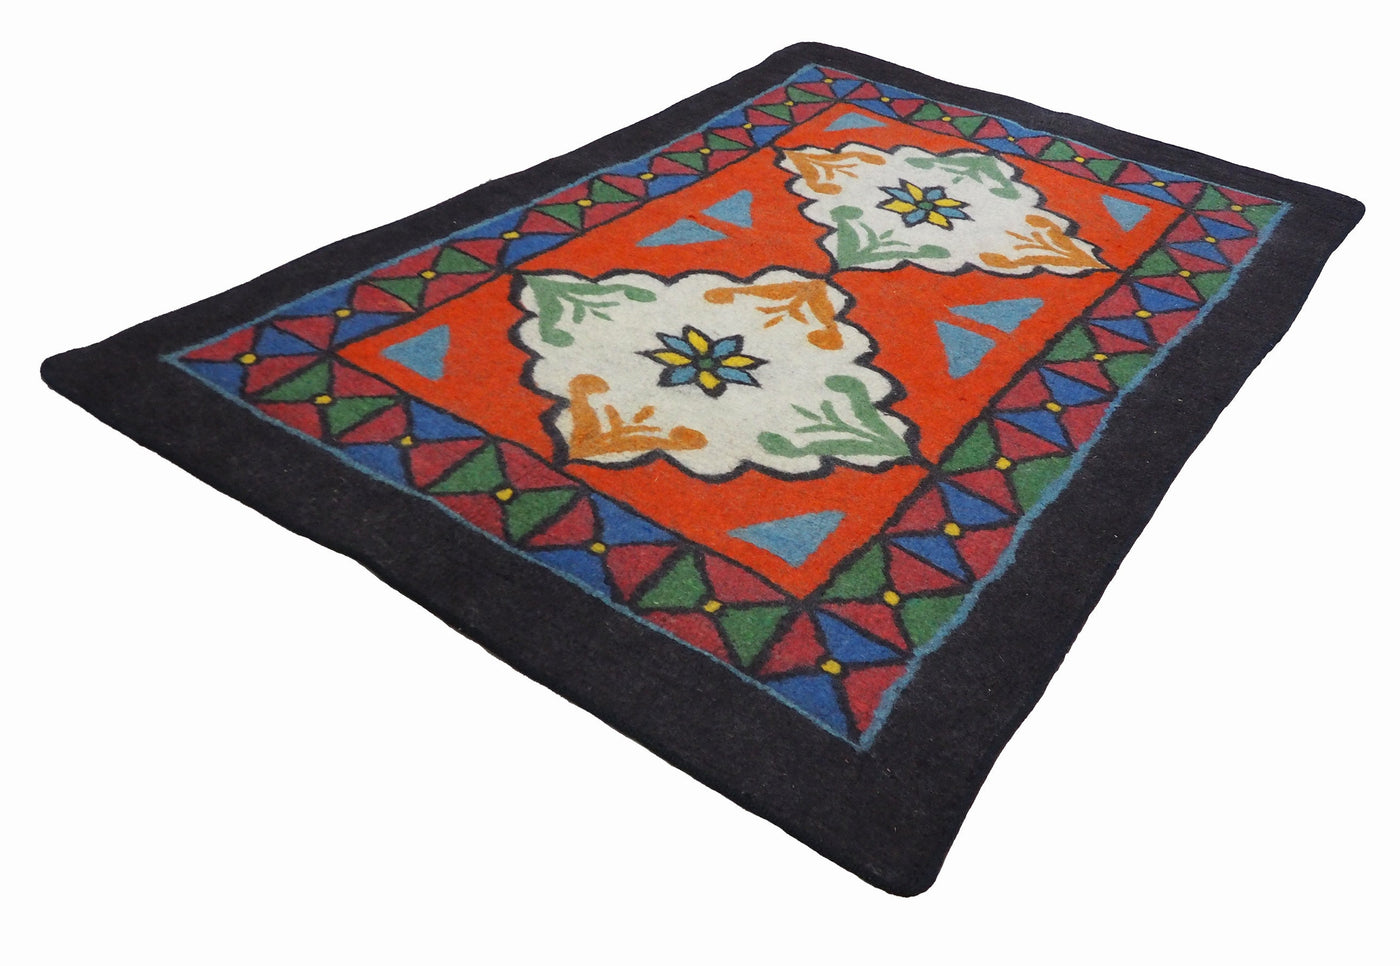 245x163 cm orient handgewebte Teppich Nomaden handgearbeitete Turkmenische nomanden Jurten Filzteppich Filz koshma Afghanistan shyrdak N699  Orientsbazar   